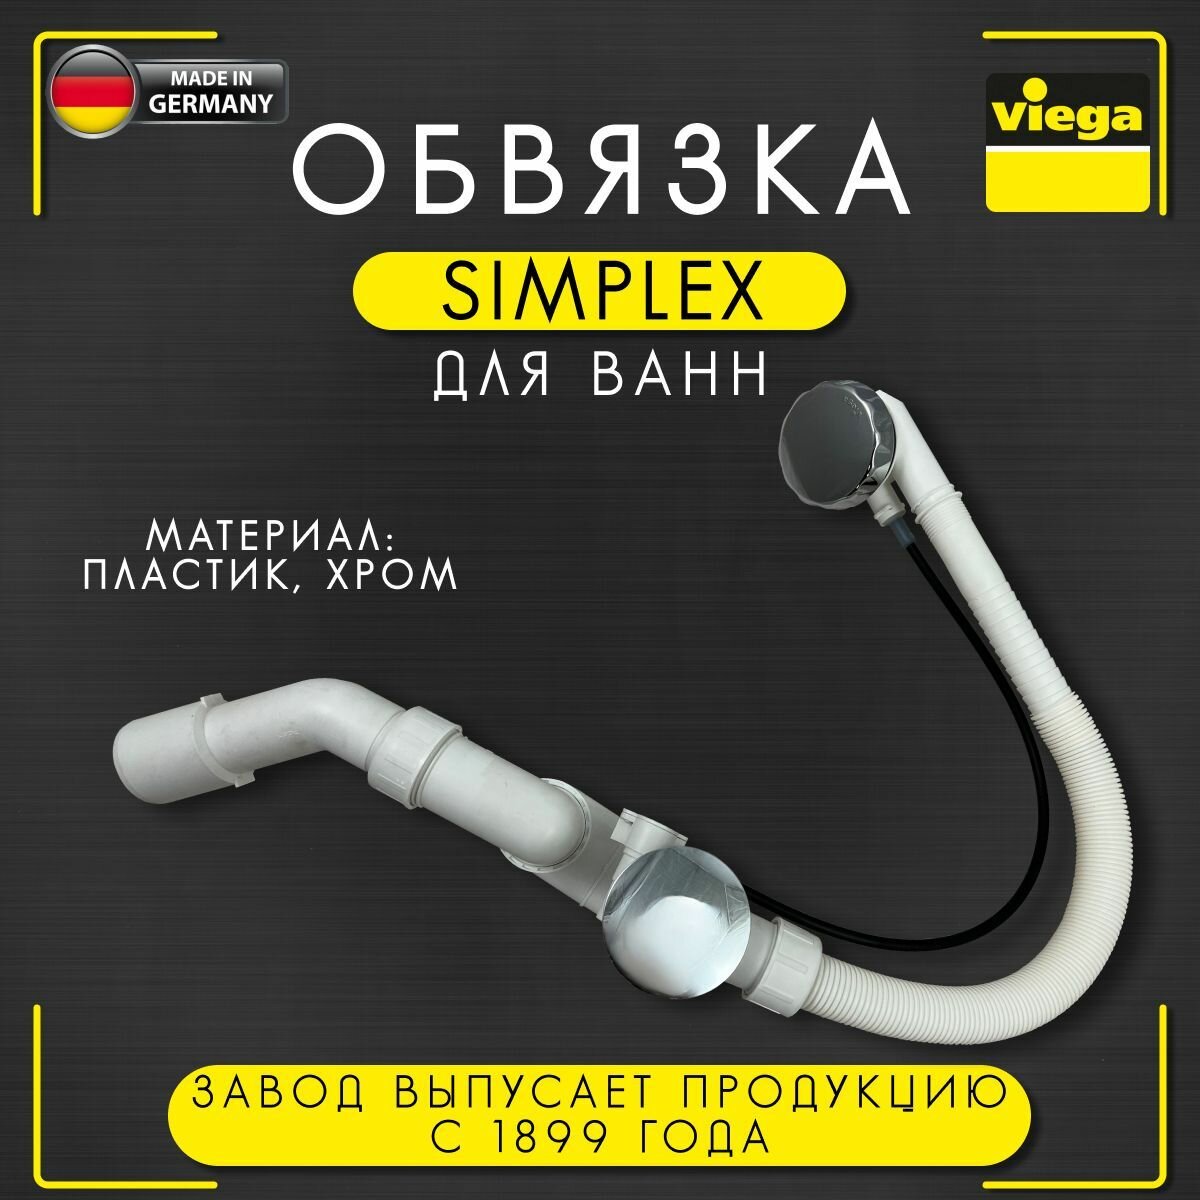 Обвязка для ванн Simplex, Viega 6168.45, арт. 285357, автоматич, хромированная, 40/50 х 560 мм